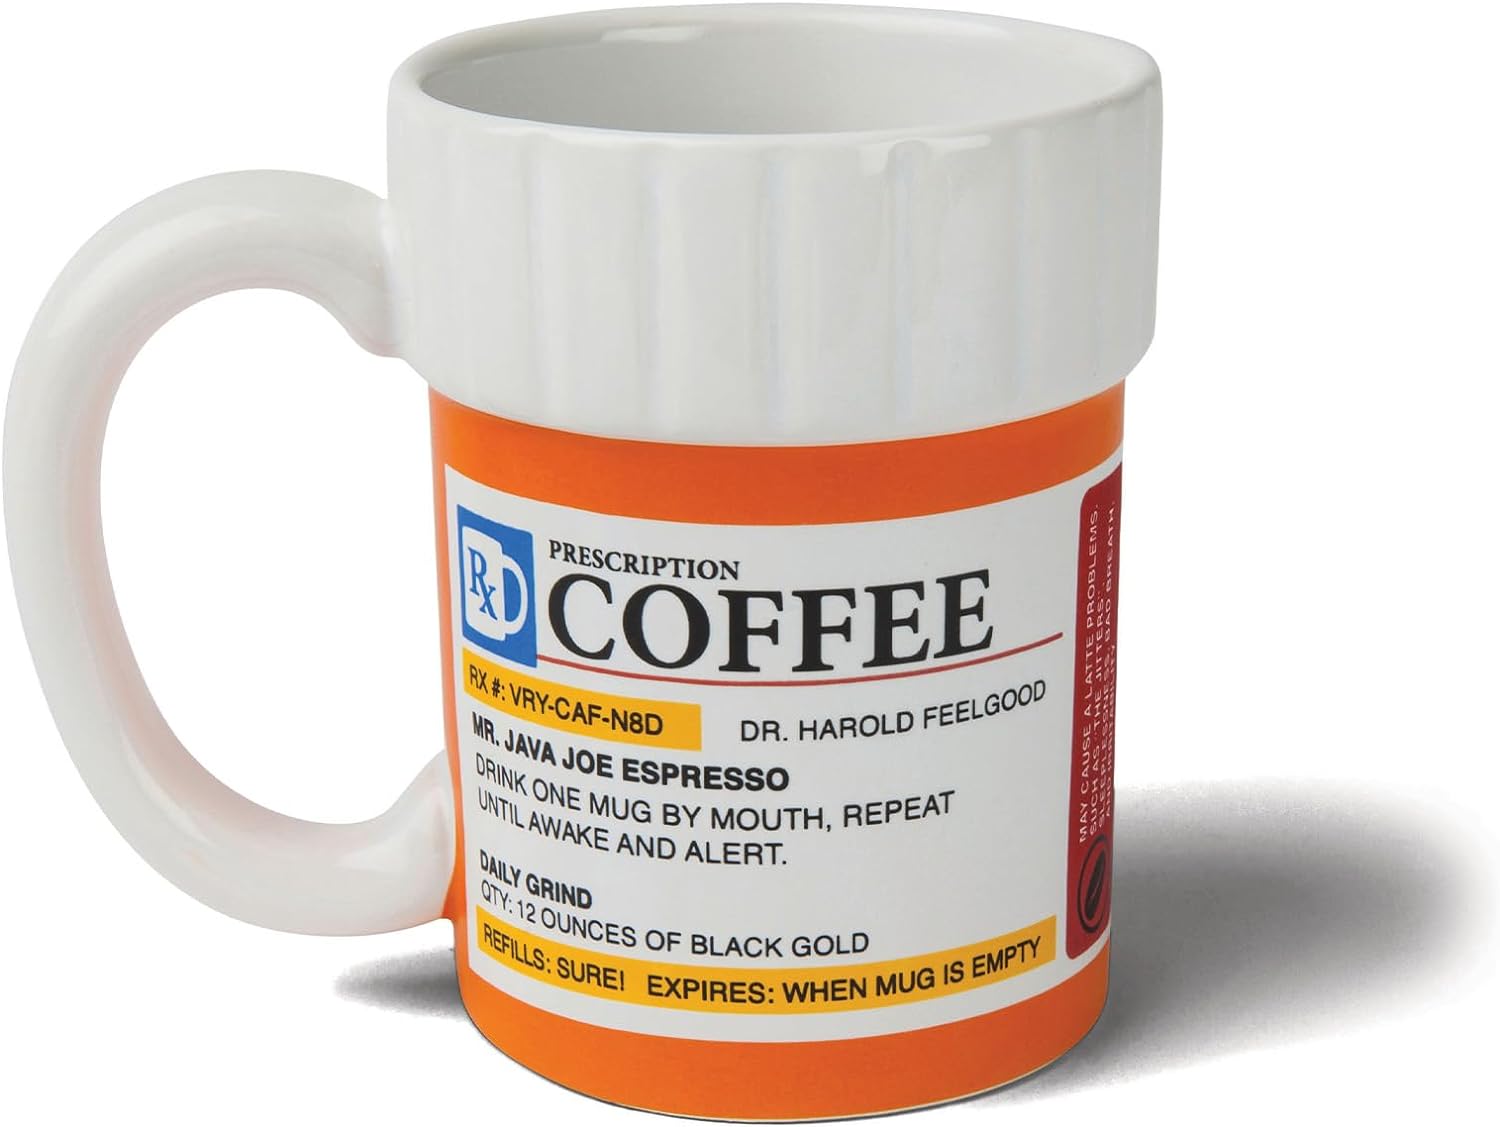 BigMouth Inc. Prescription Coffee Mug Review